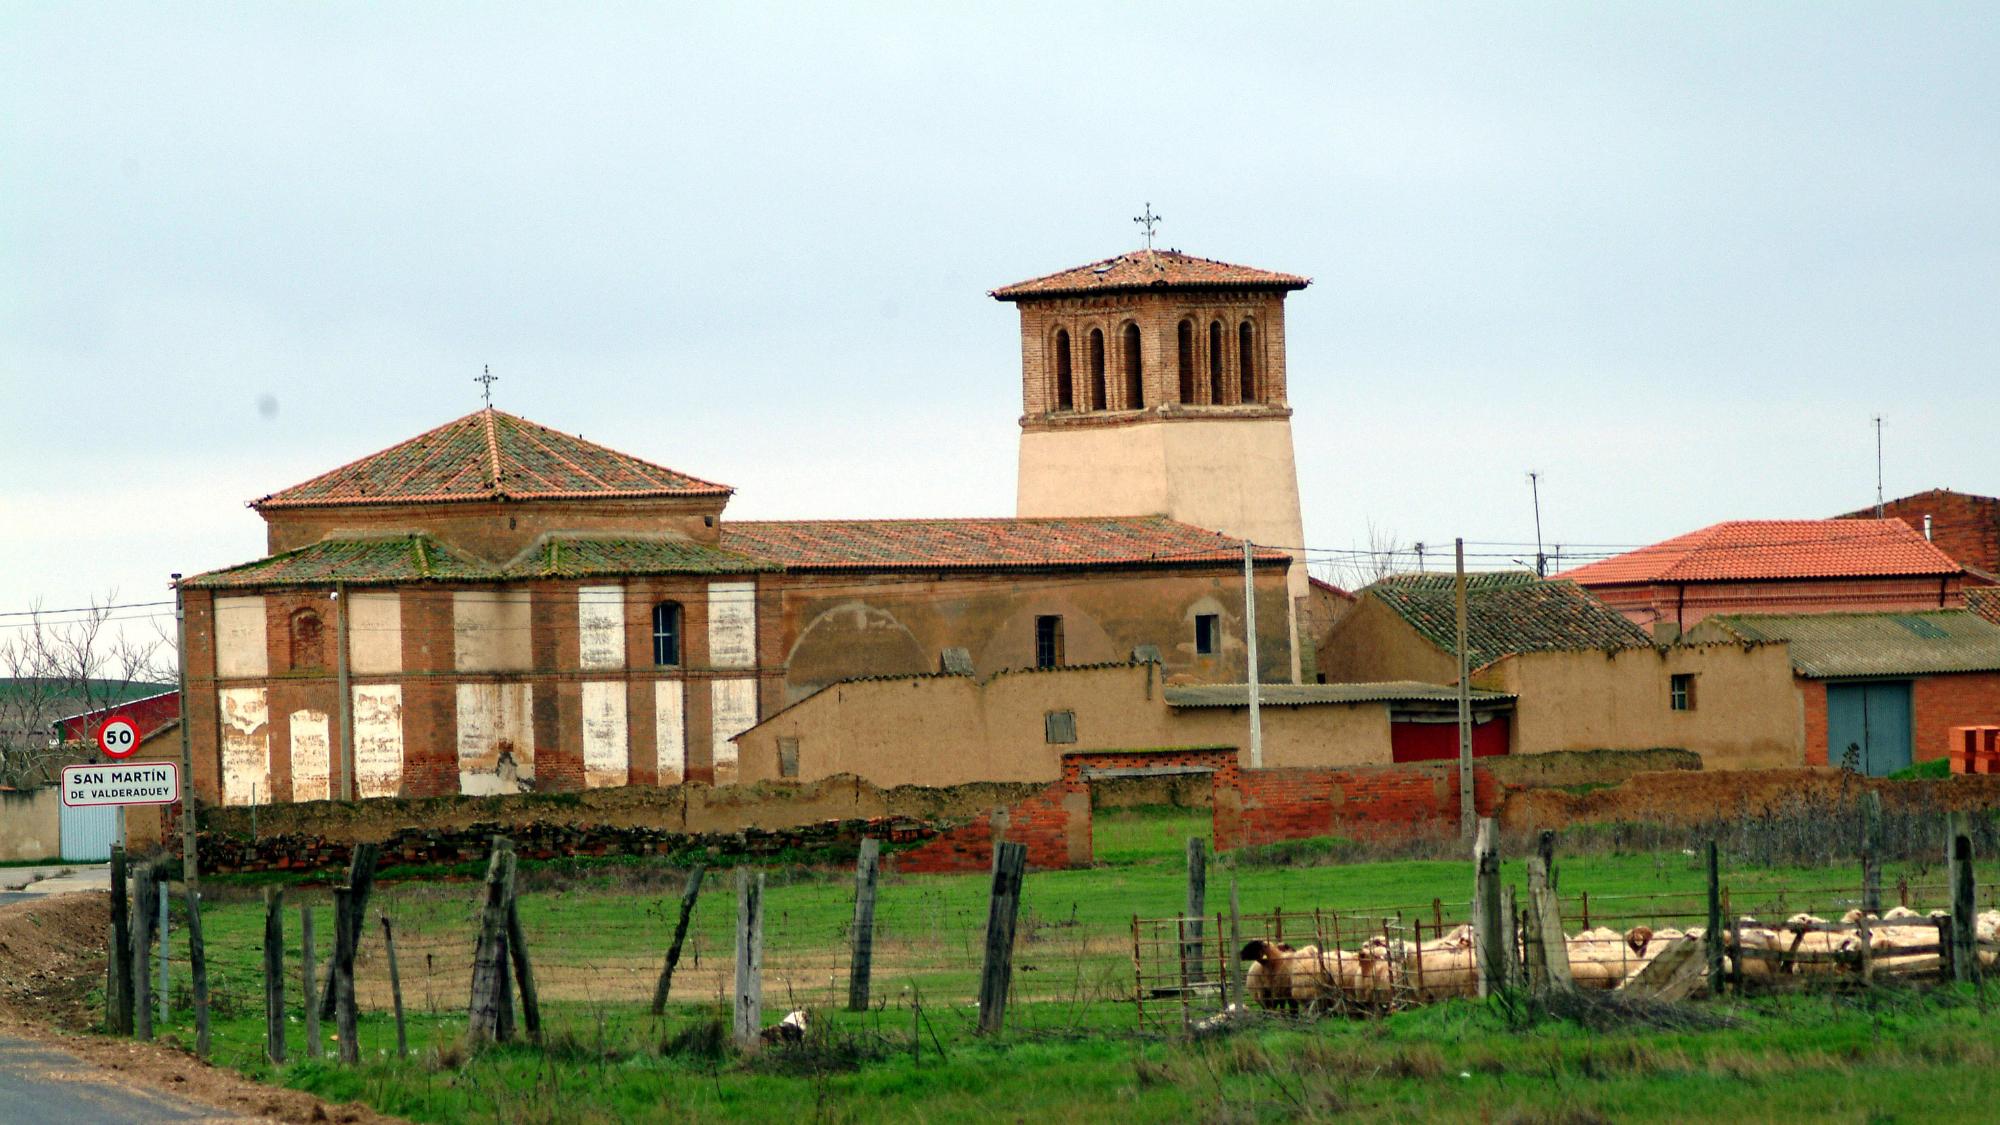 San Martín de Valderaduey